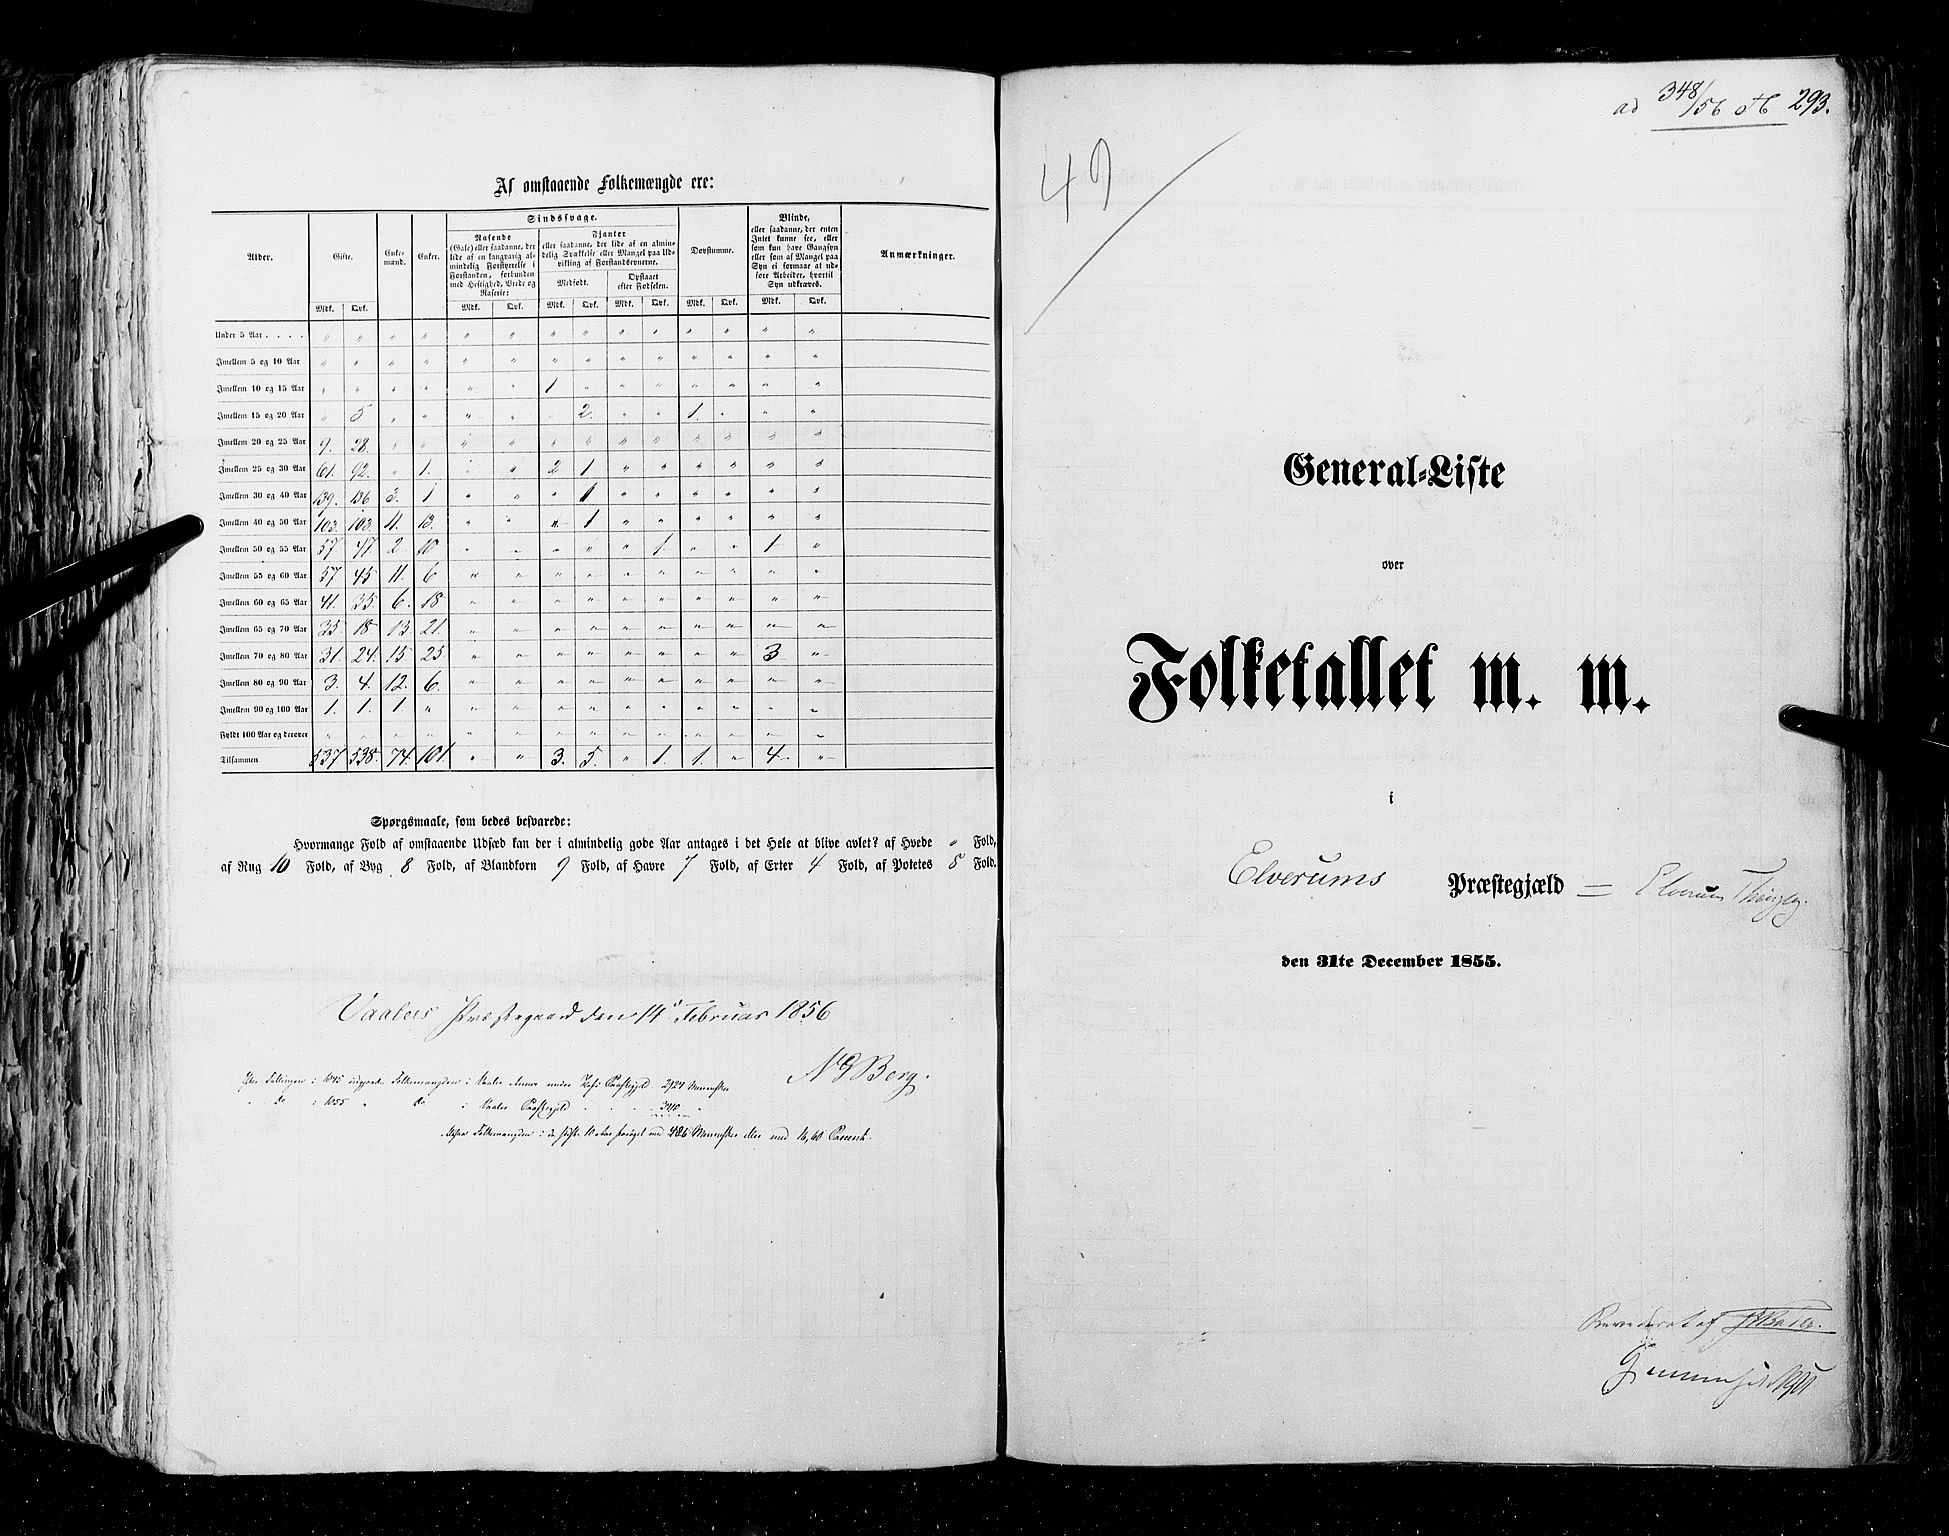 RA, Folketellingen 1855, bind 1: Akershus amt, Smålenenes amt og Hedemarken amt, 1855, s. 293